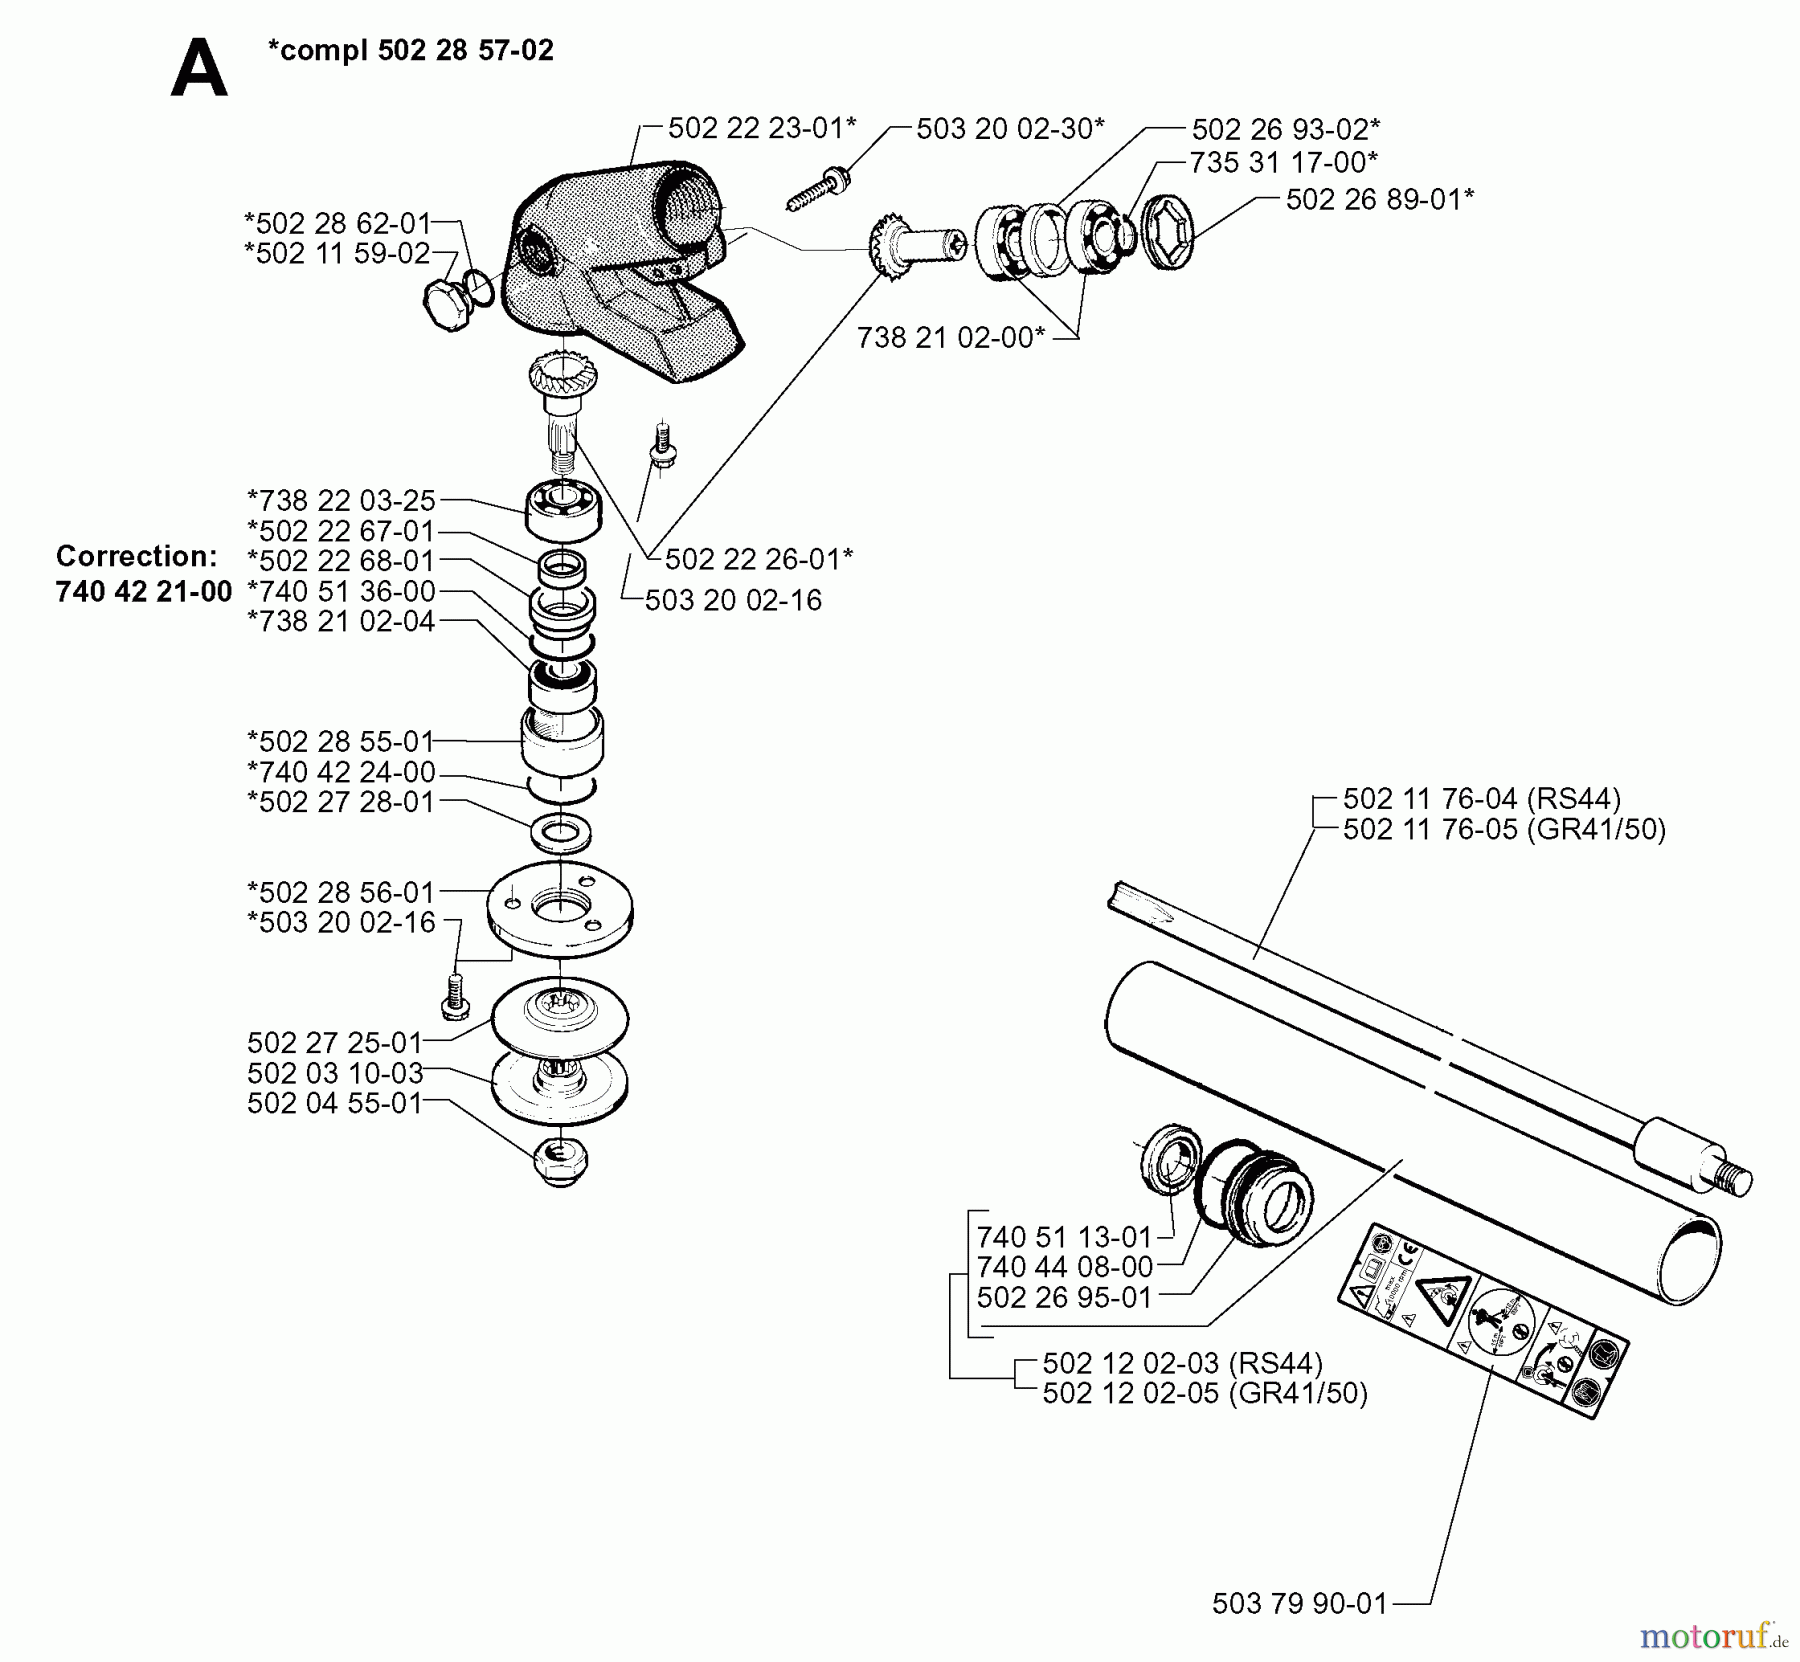  Jonsered Motorsensen, Trimmer GR50 - Jonsered String/Brush Trimmer (1998-06) BEVEL GEAR SHAFT